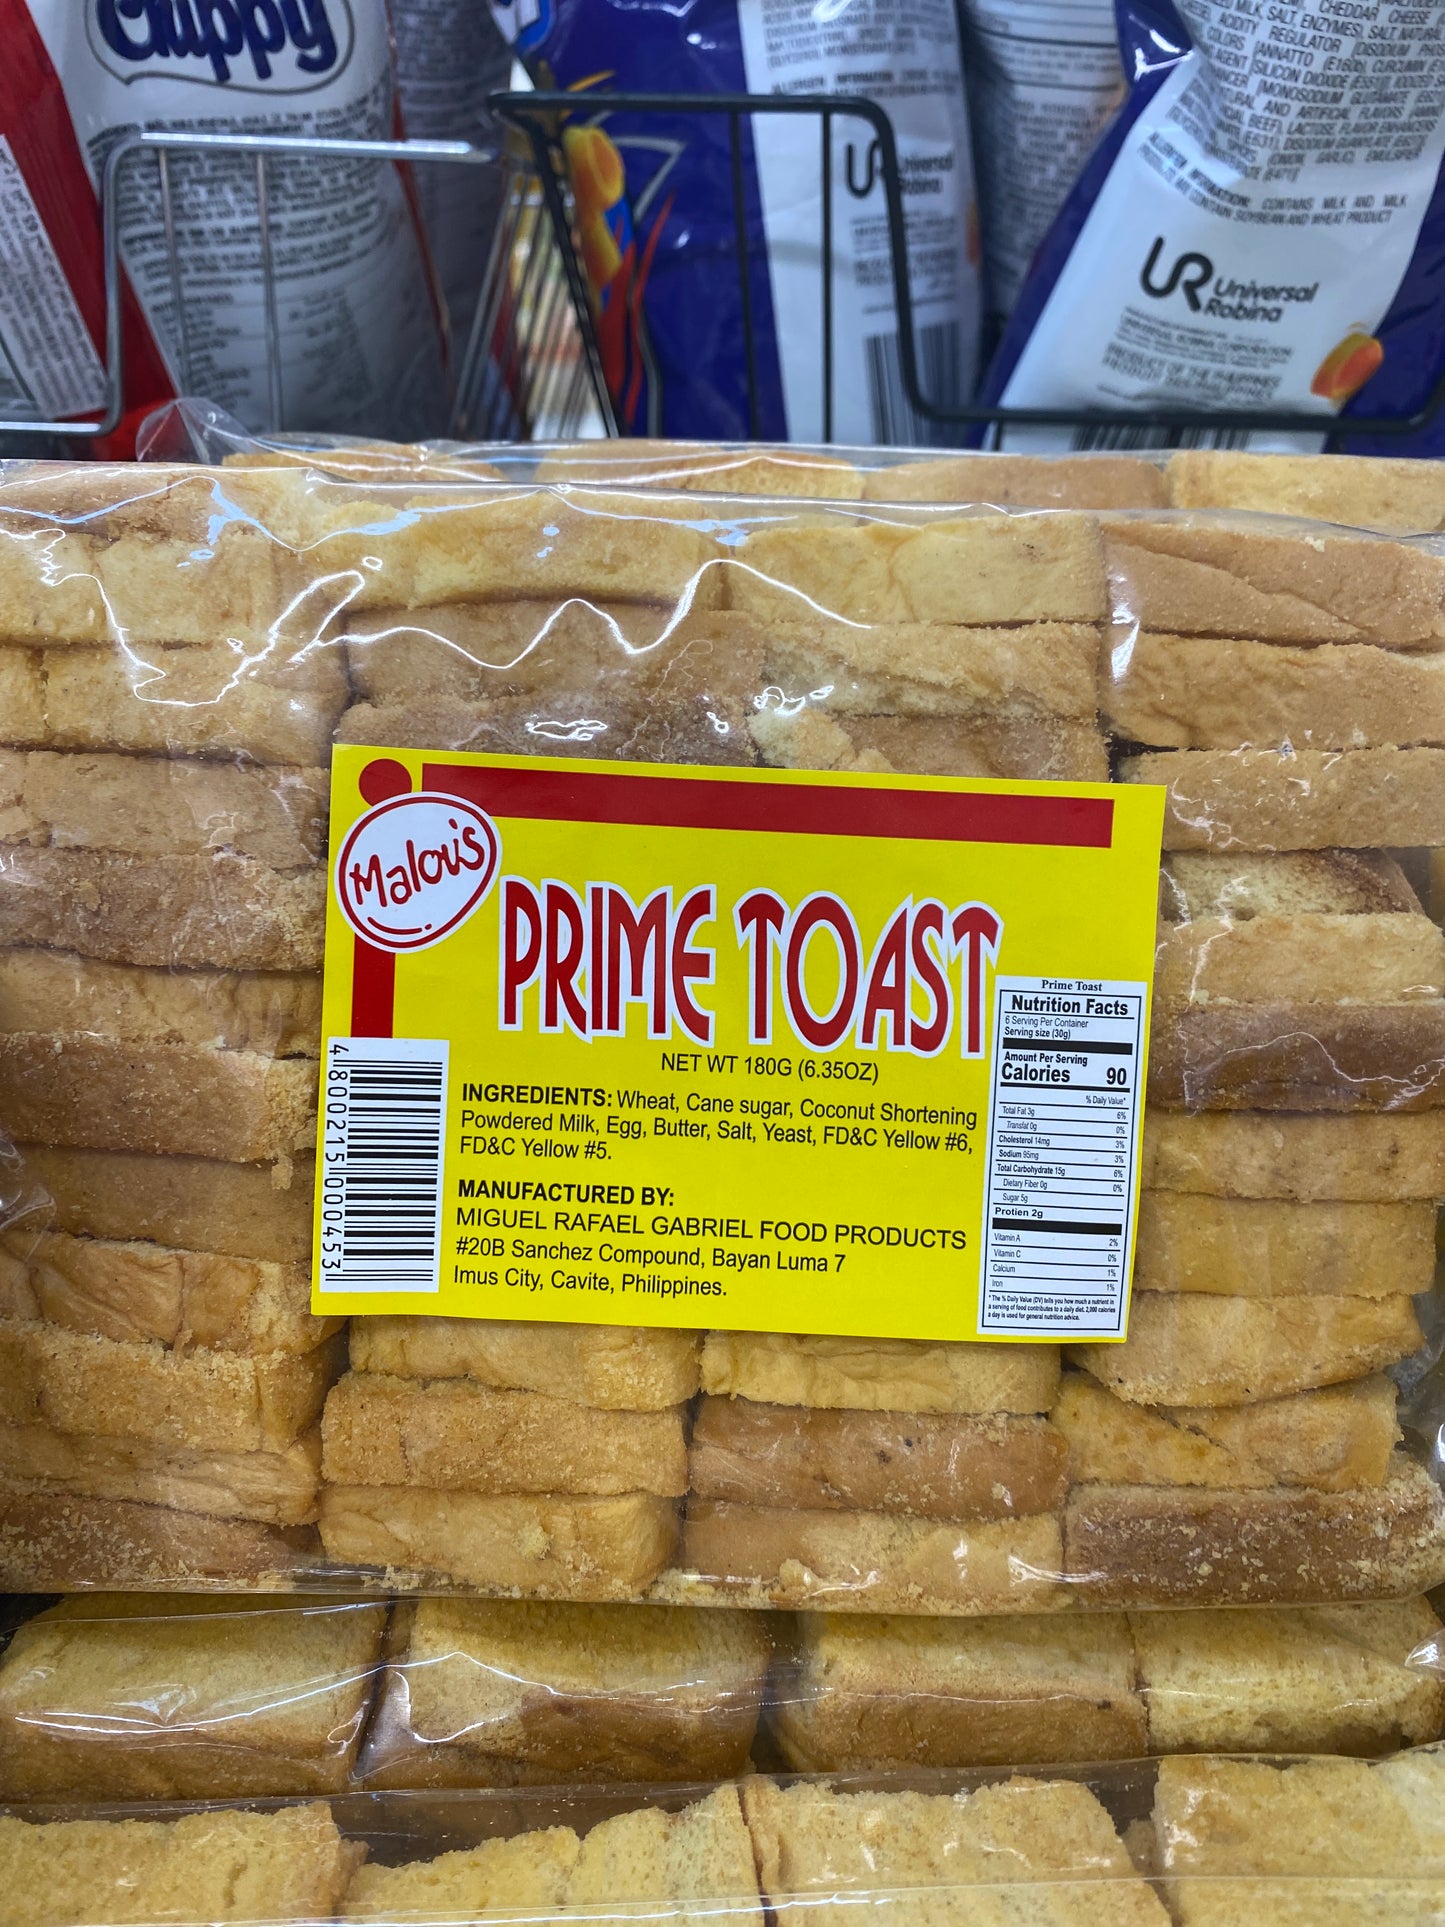 Malou's Prime Toast -6.35oz